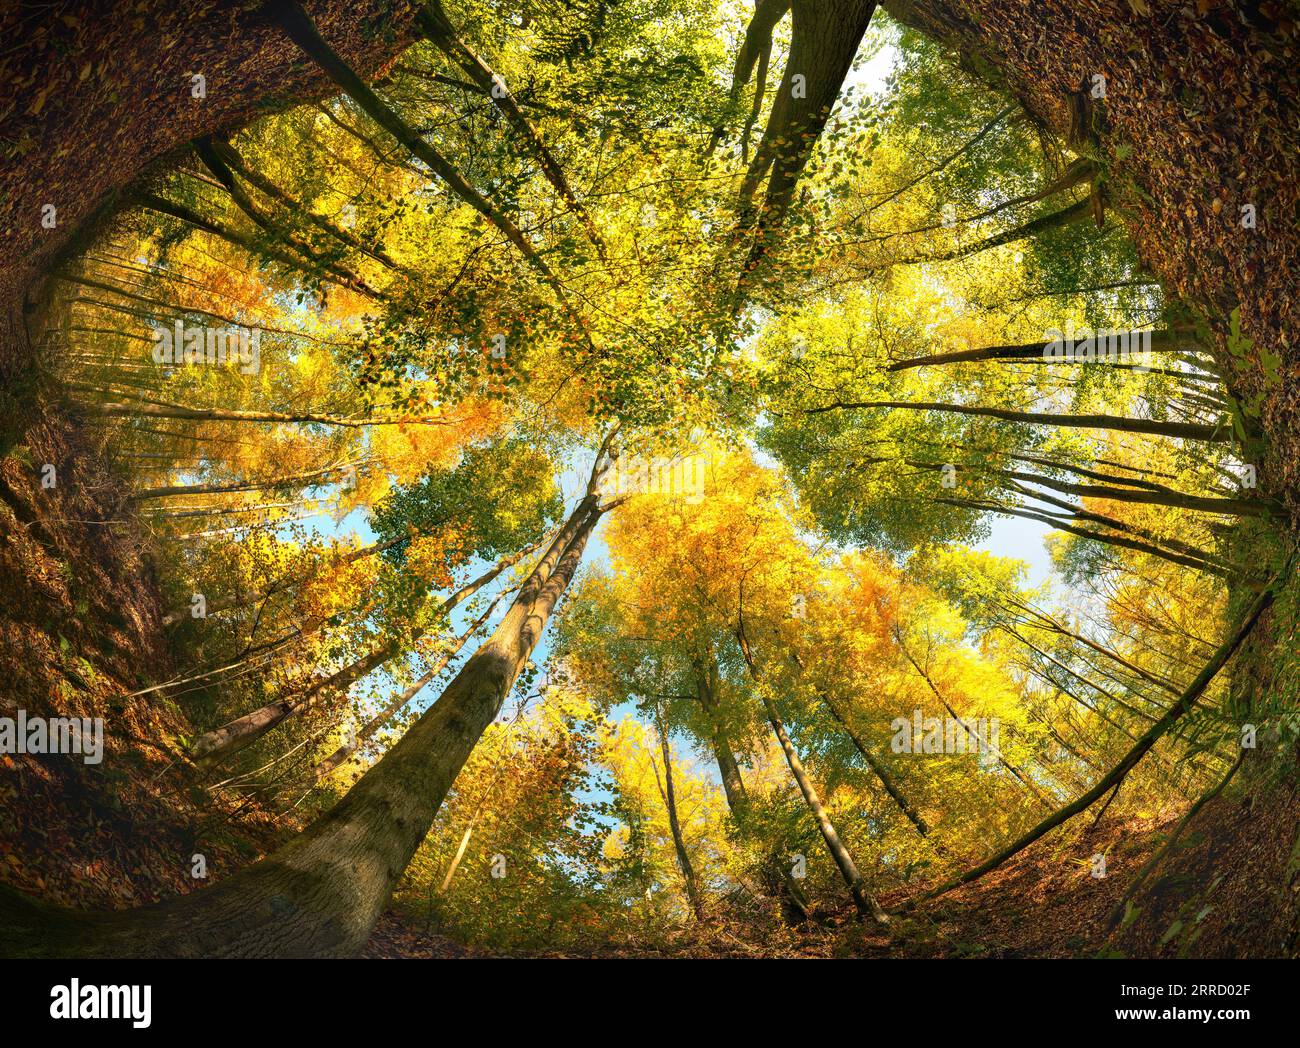 Angolo ultra ampio di una colorata tettoia boschiva in autunno, incorniciata da un cerchio del terreno boschivo o della terra Foto Stock